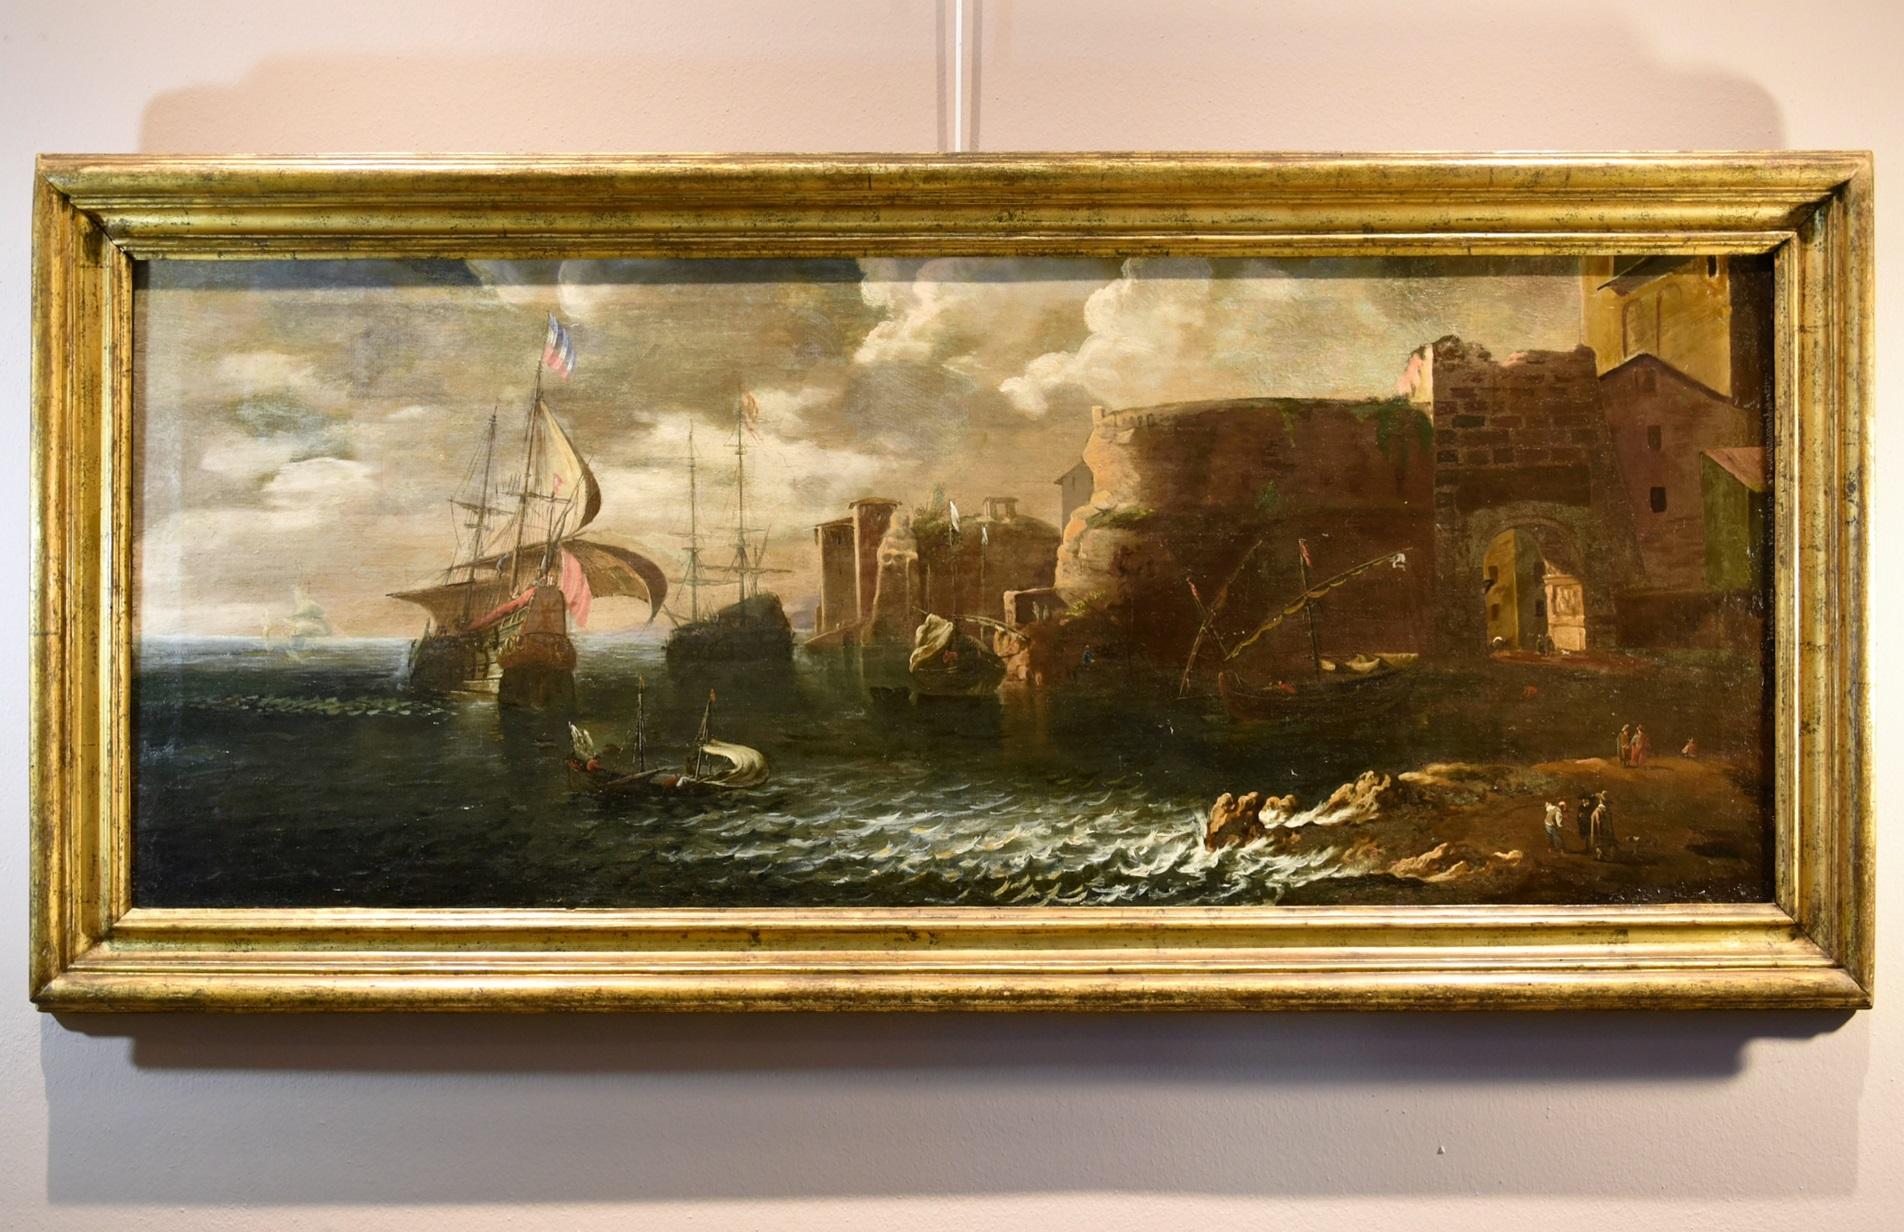 Coastal See Landscape Antoniani Gemälde 18. Jahrhundert Alter Meister Öl auf Leinwand Kunst